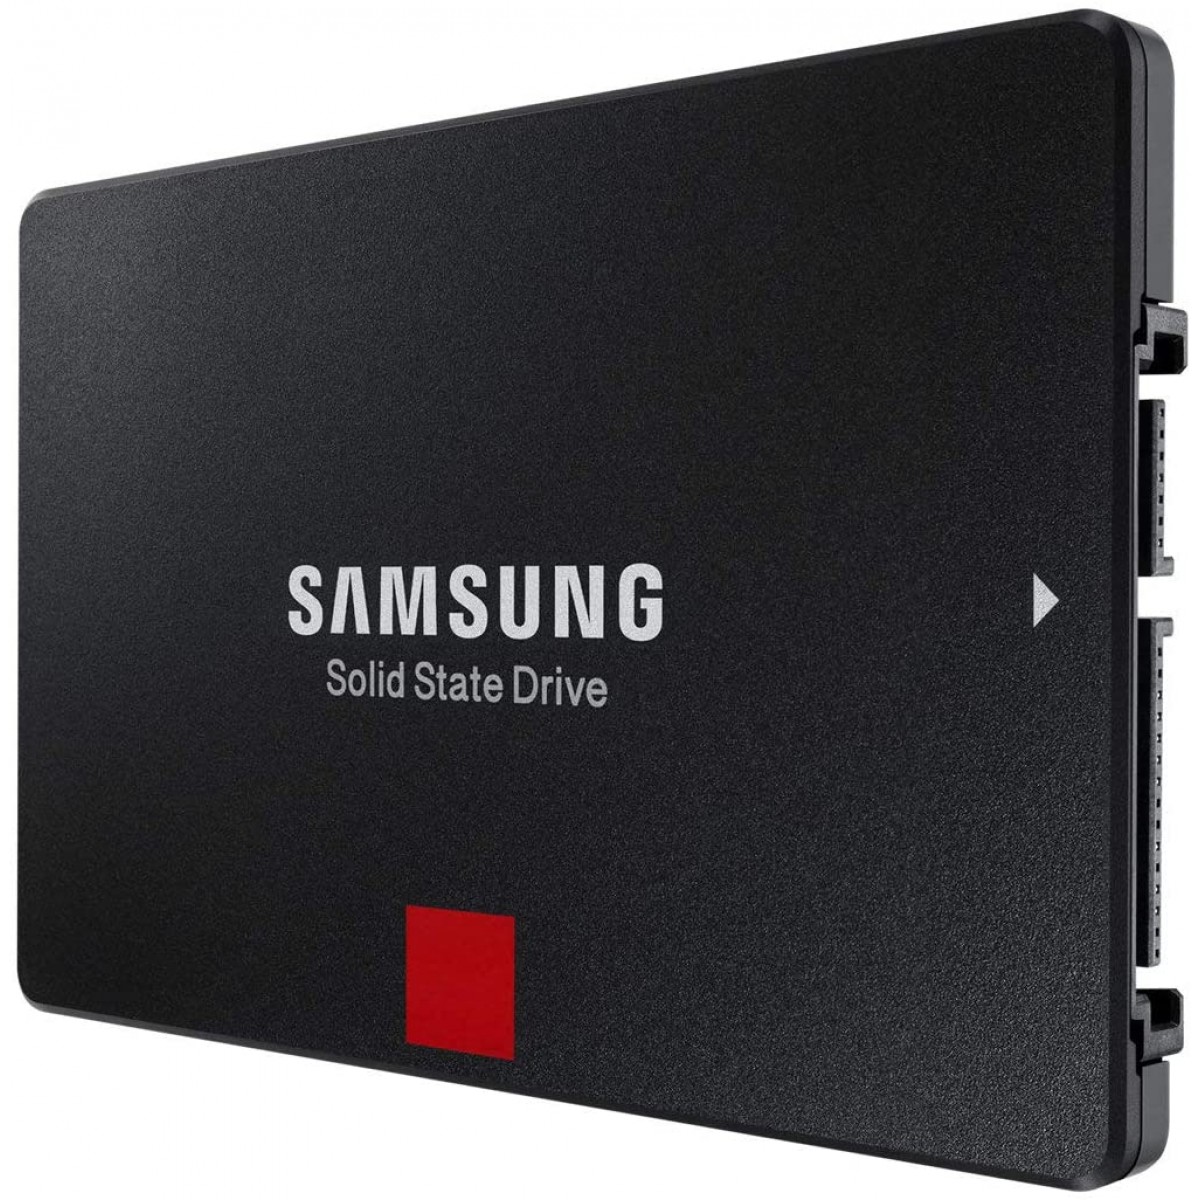 SSD Ssamsung 860 PRO, 512GB, Sata III, MZ-76P512E